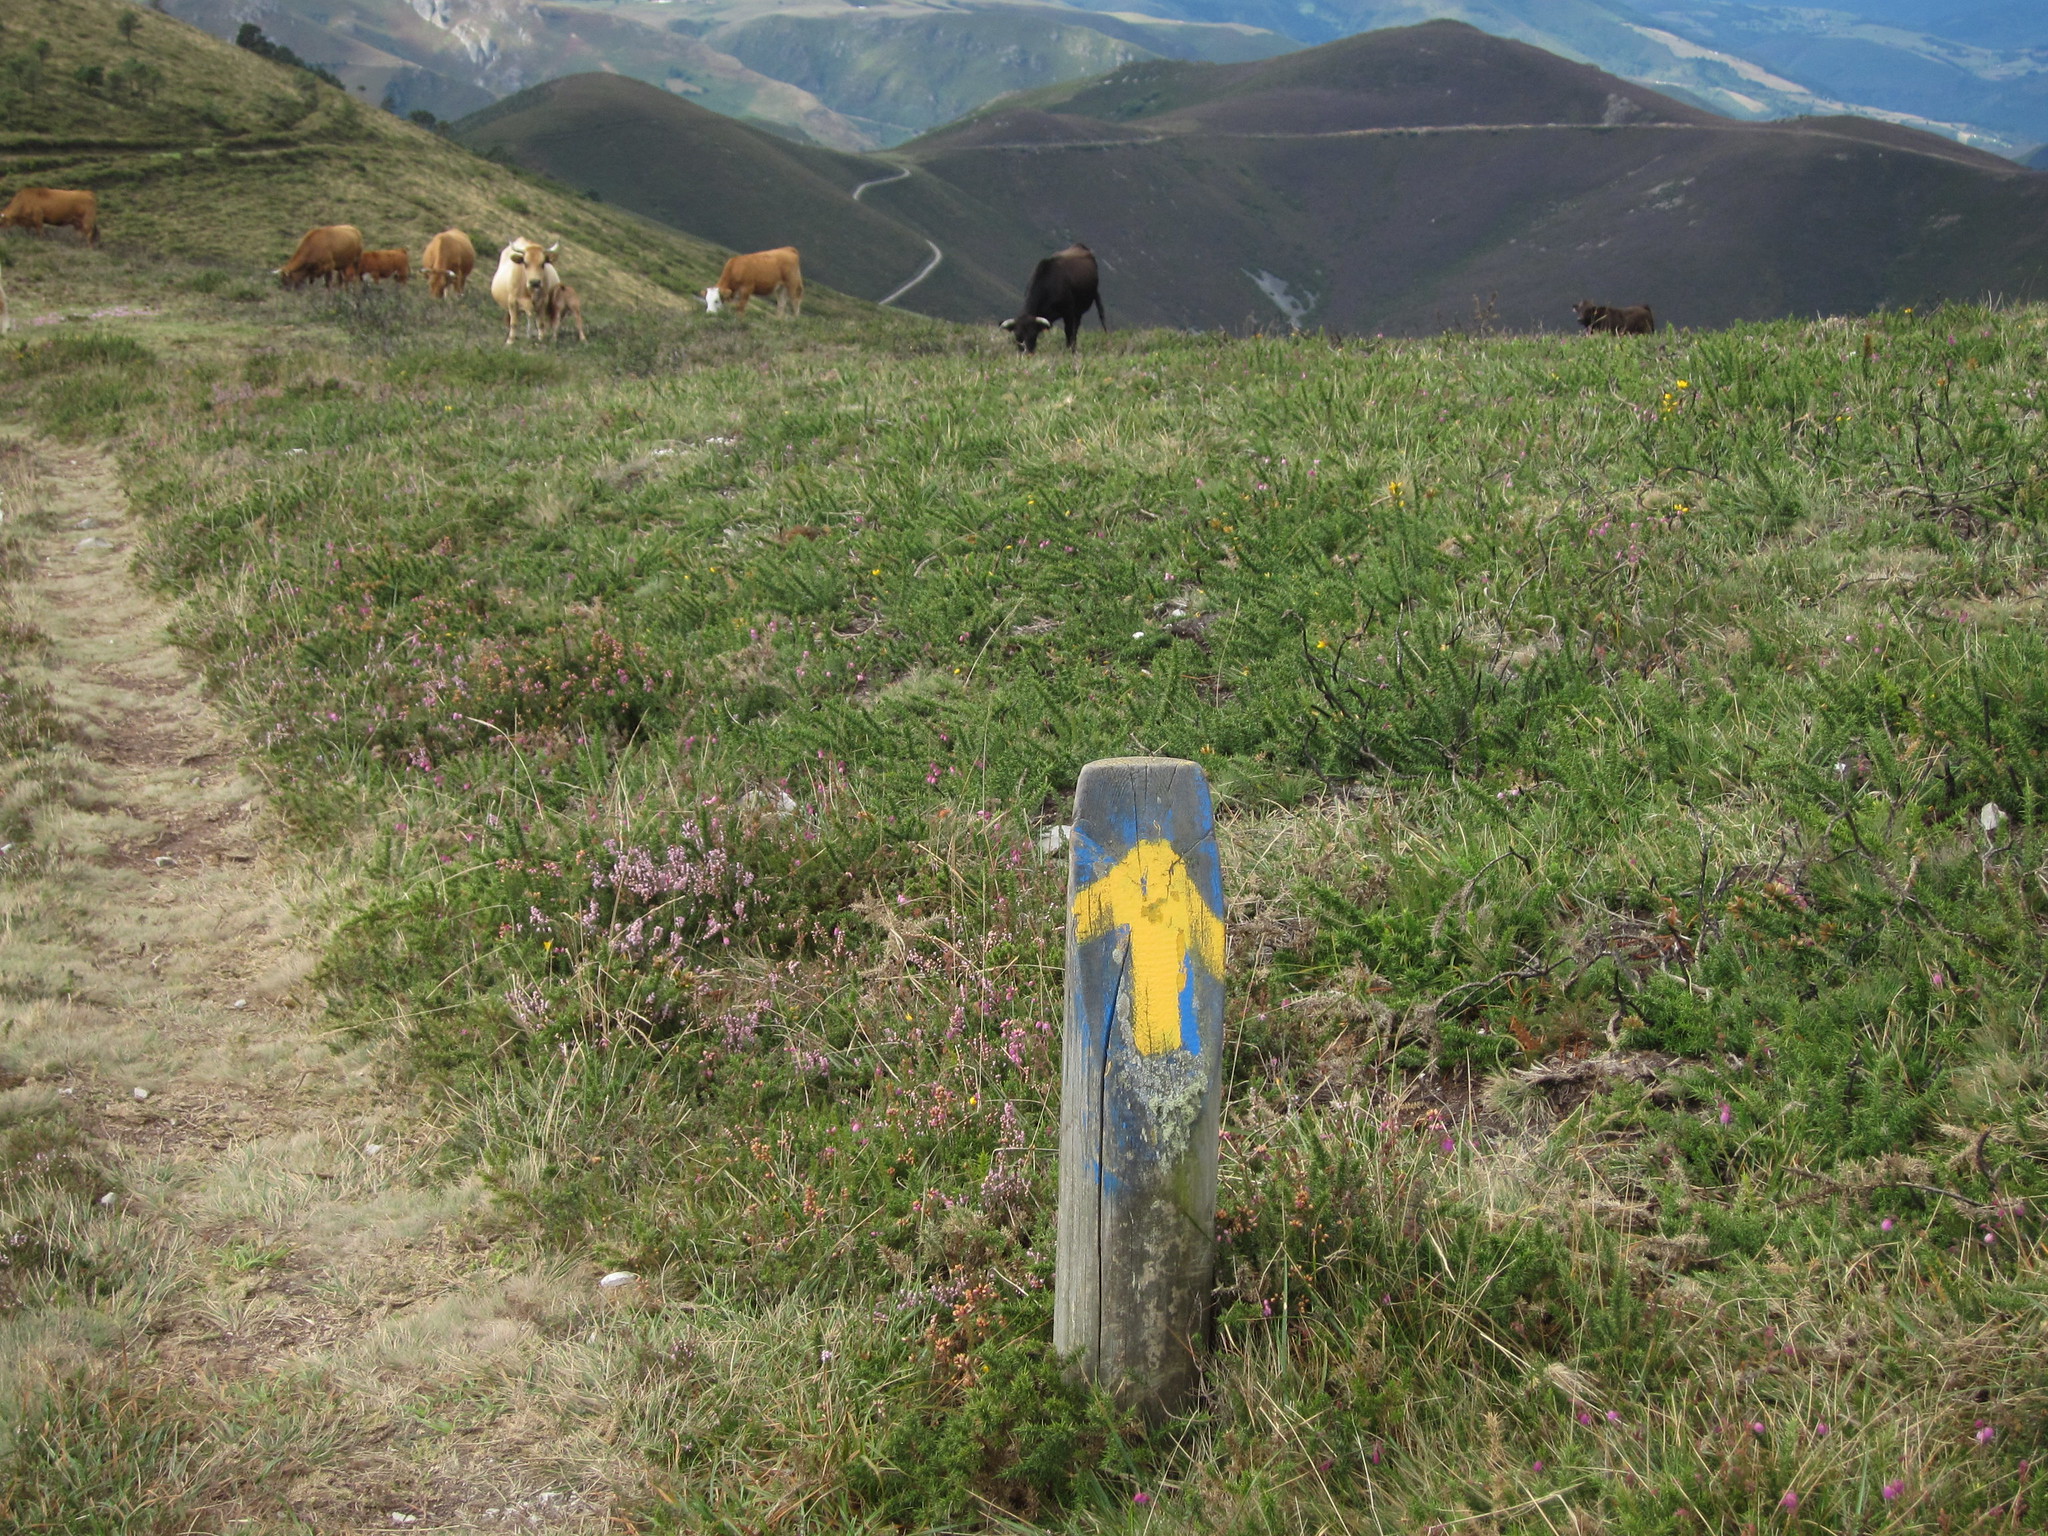 Paisaje en Asturias, España. Se muestra una flecha amarilla en la imagen.